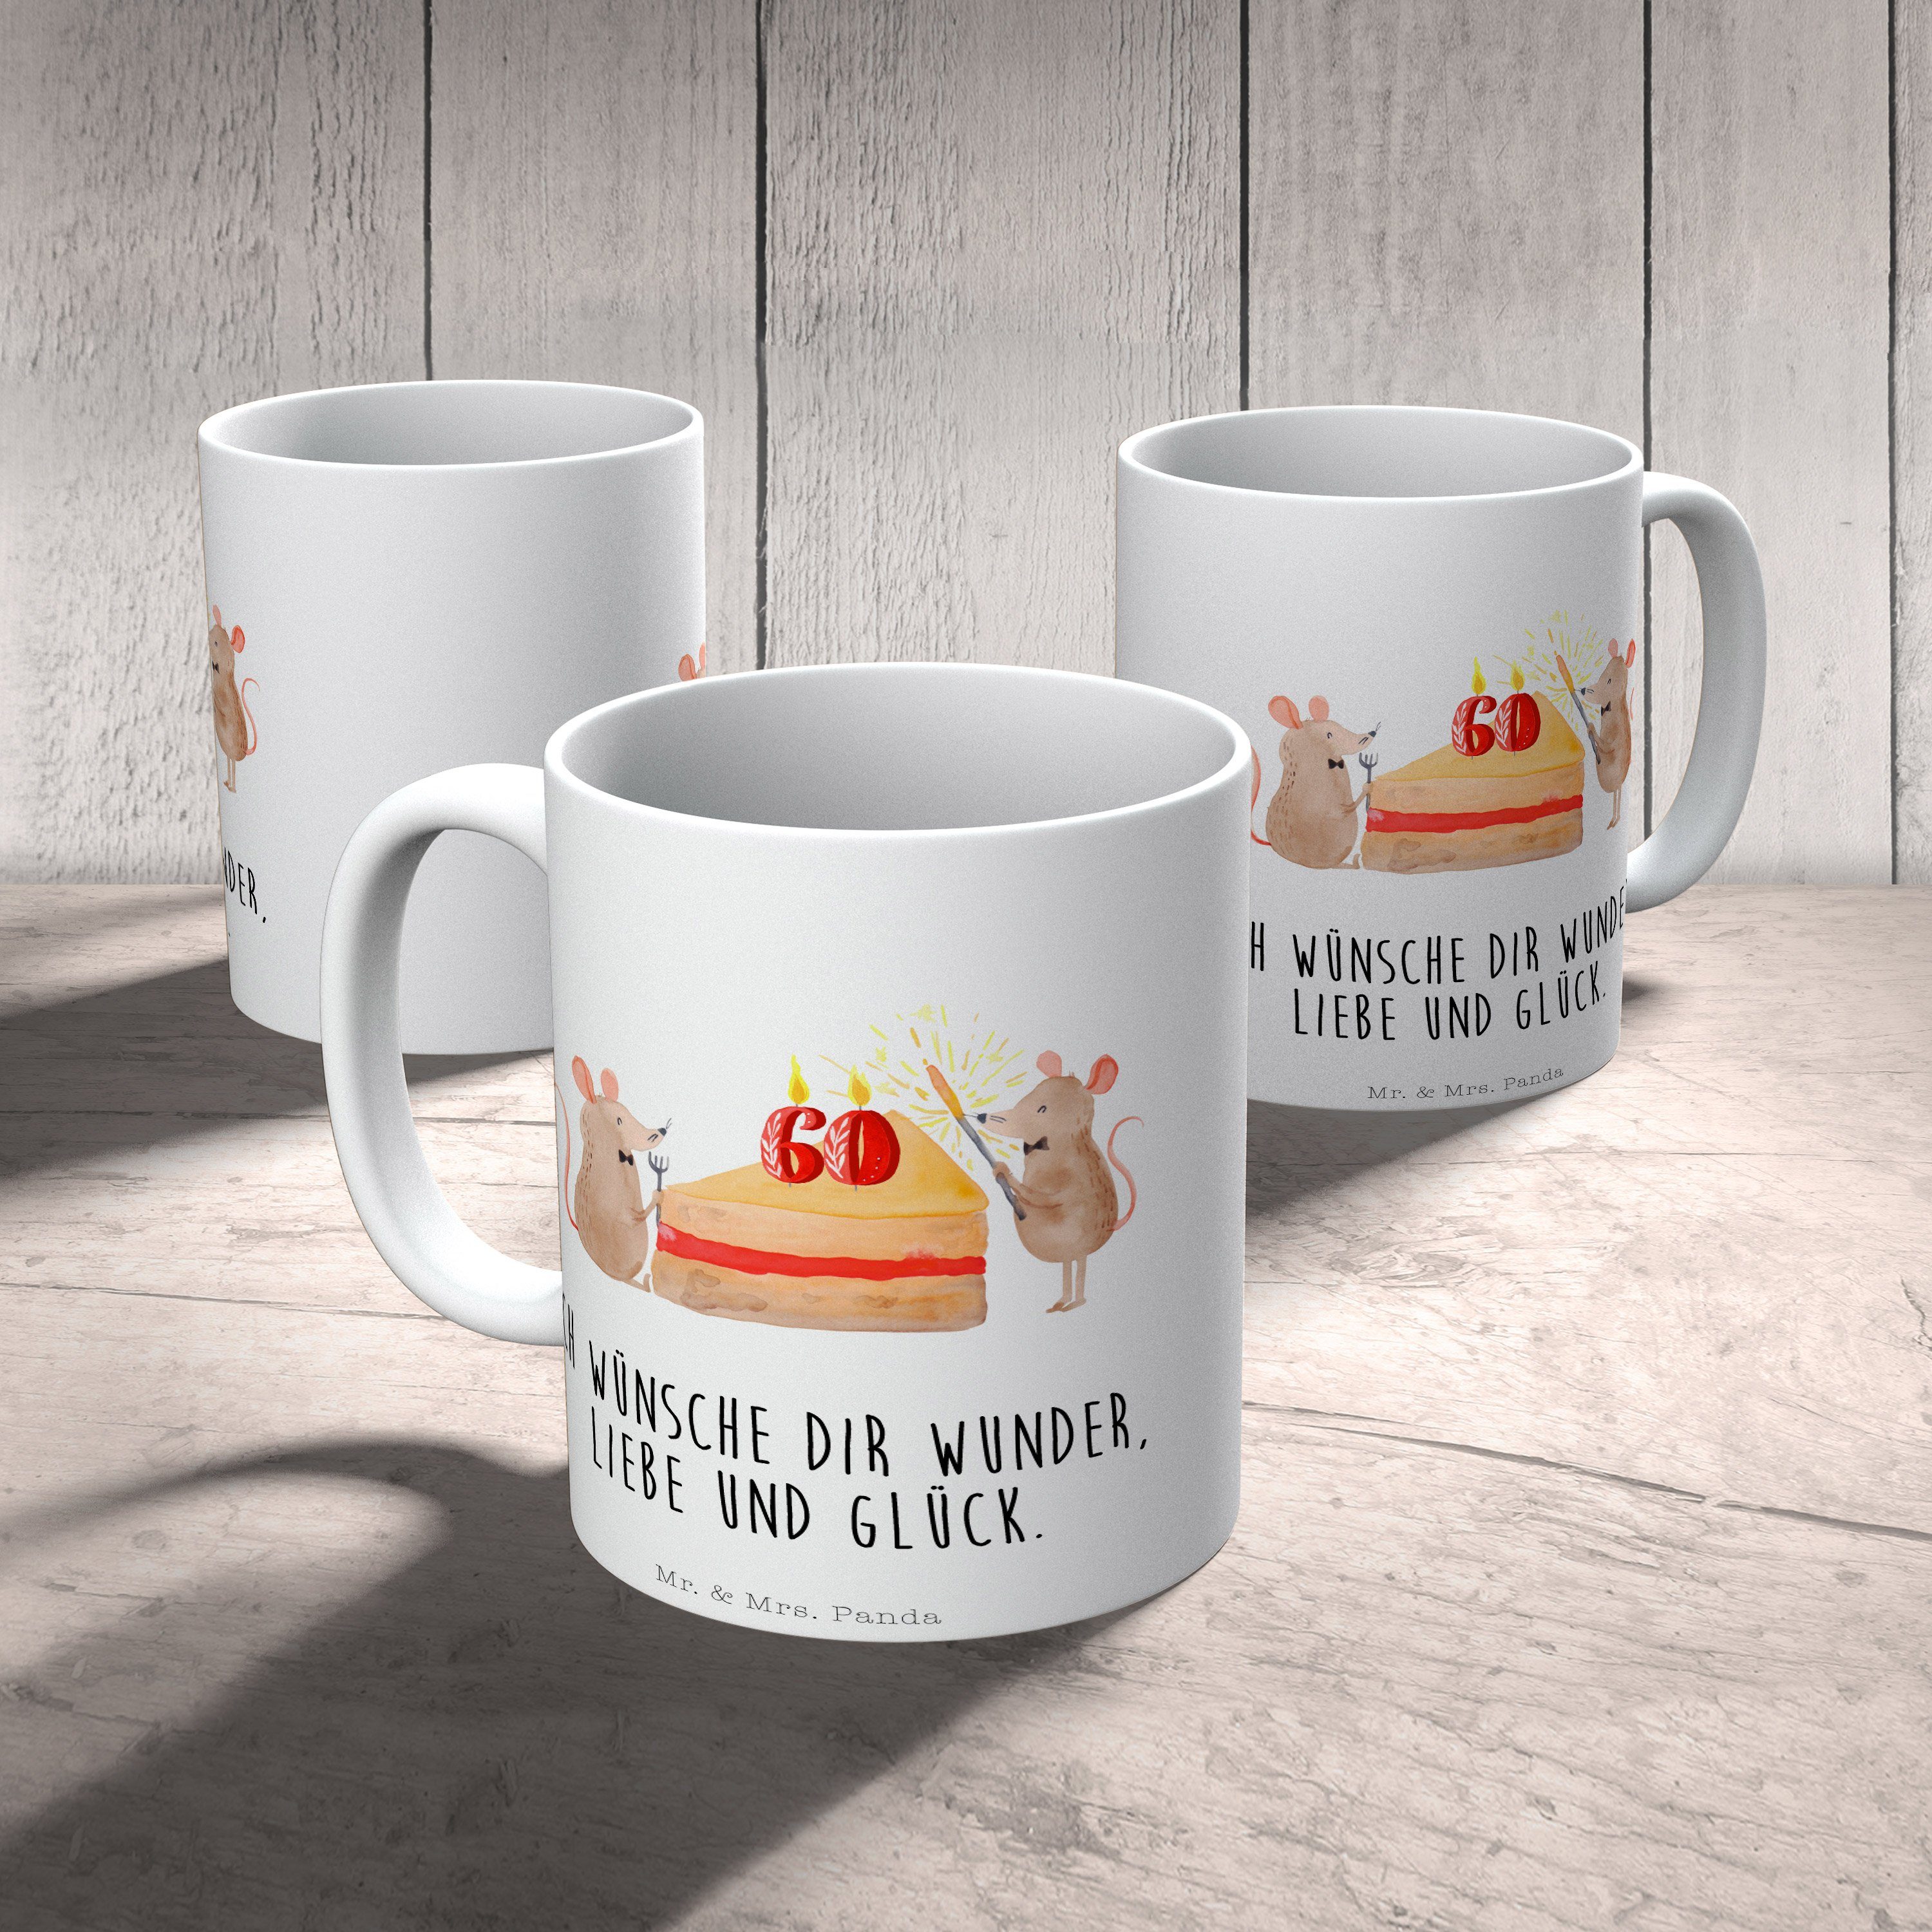 Mr. & Mrs. Panda Mäuse - Geburtstag - Kuchen Geschenk Tasse, Keramik 60. Geburt, Geschenk, Weiß Tasse